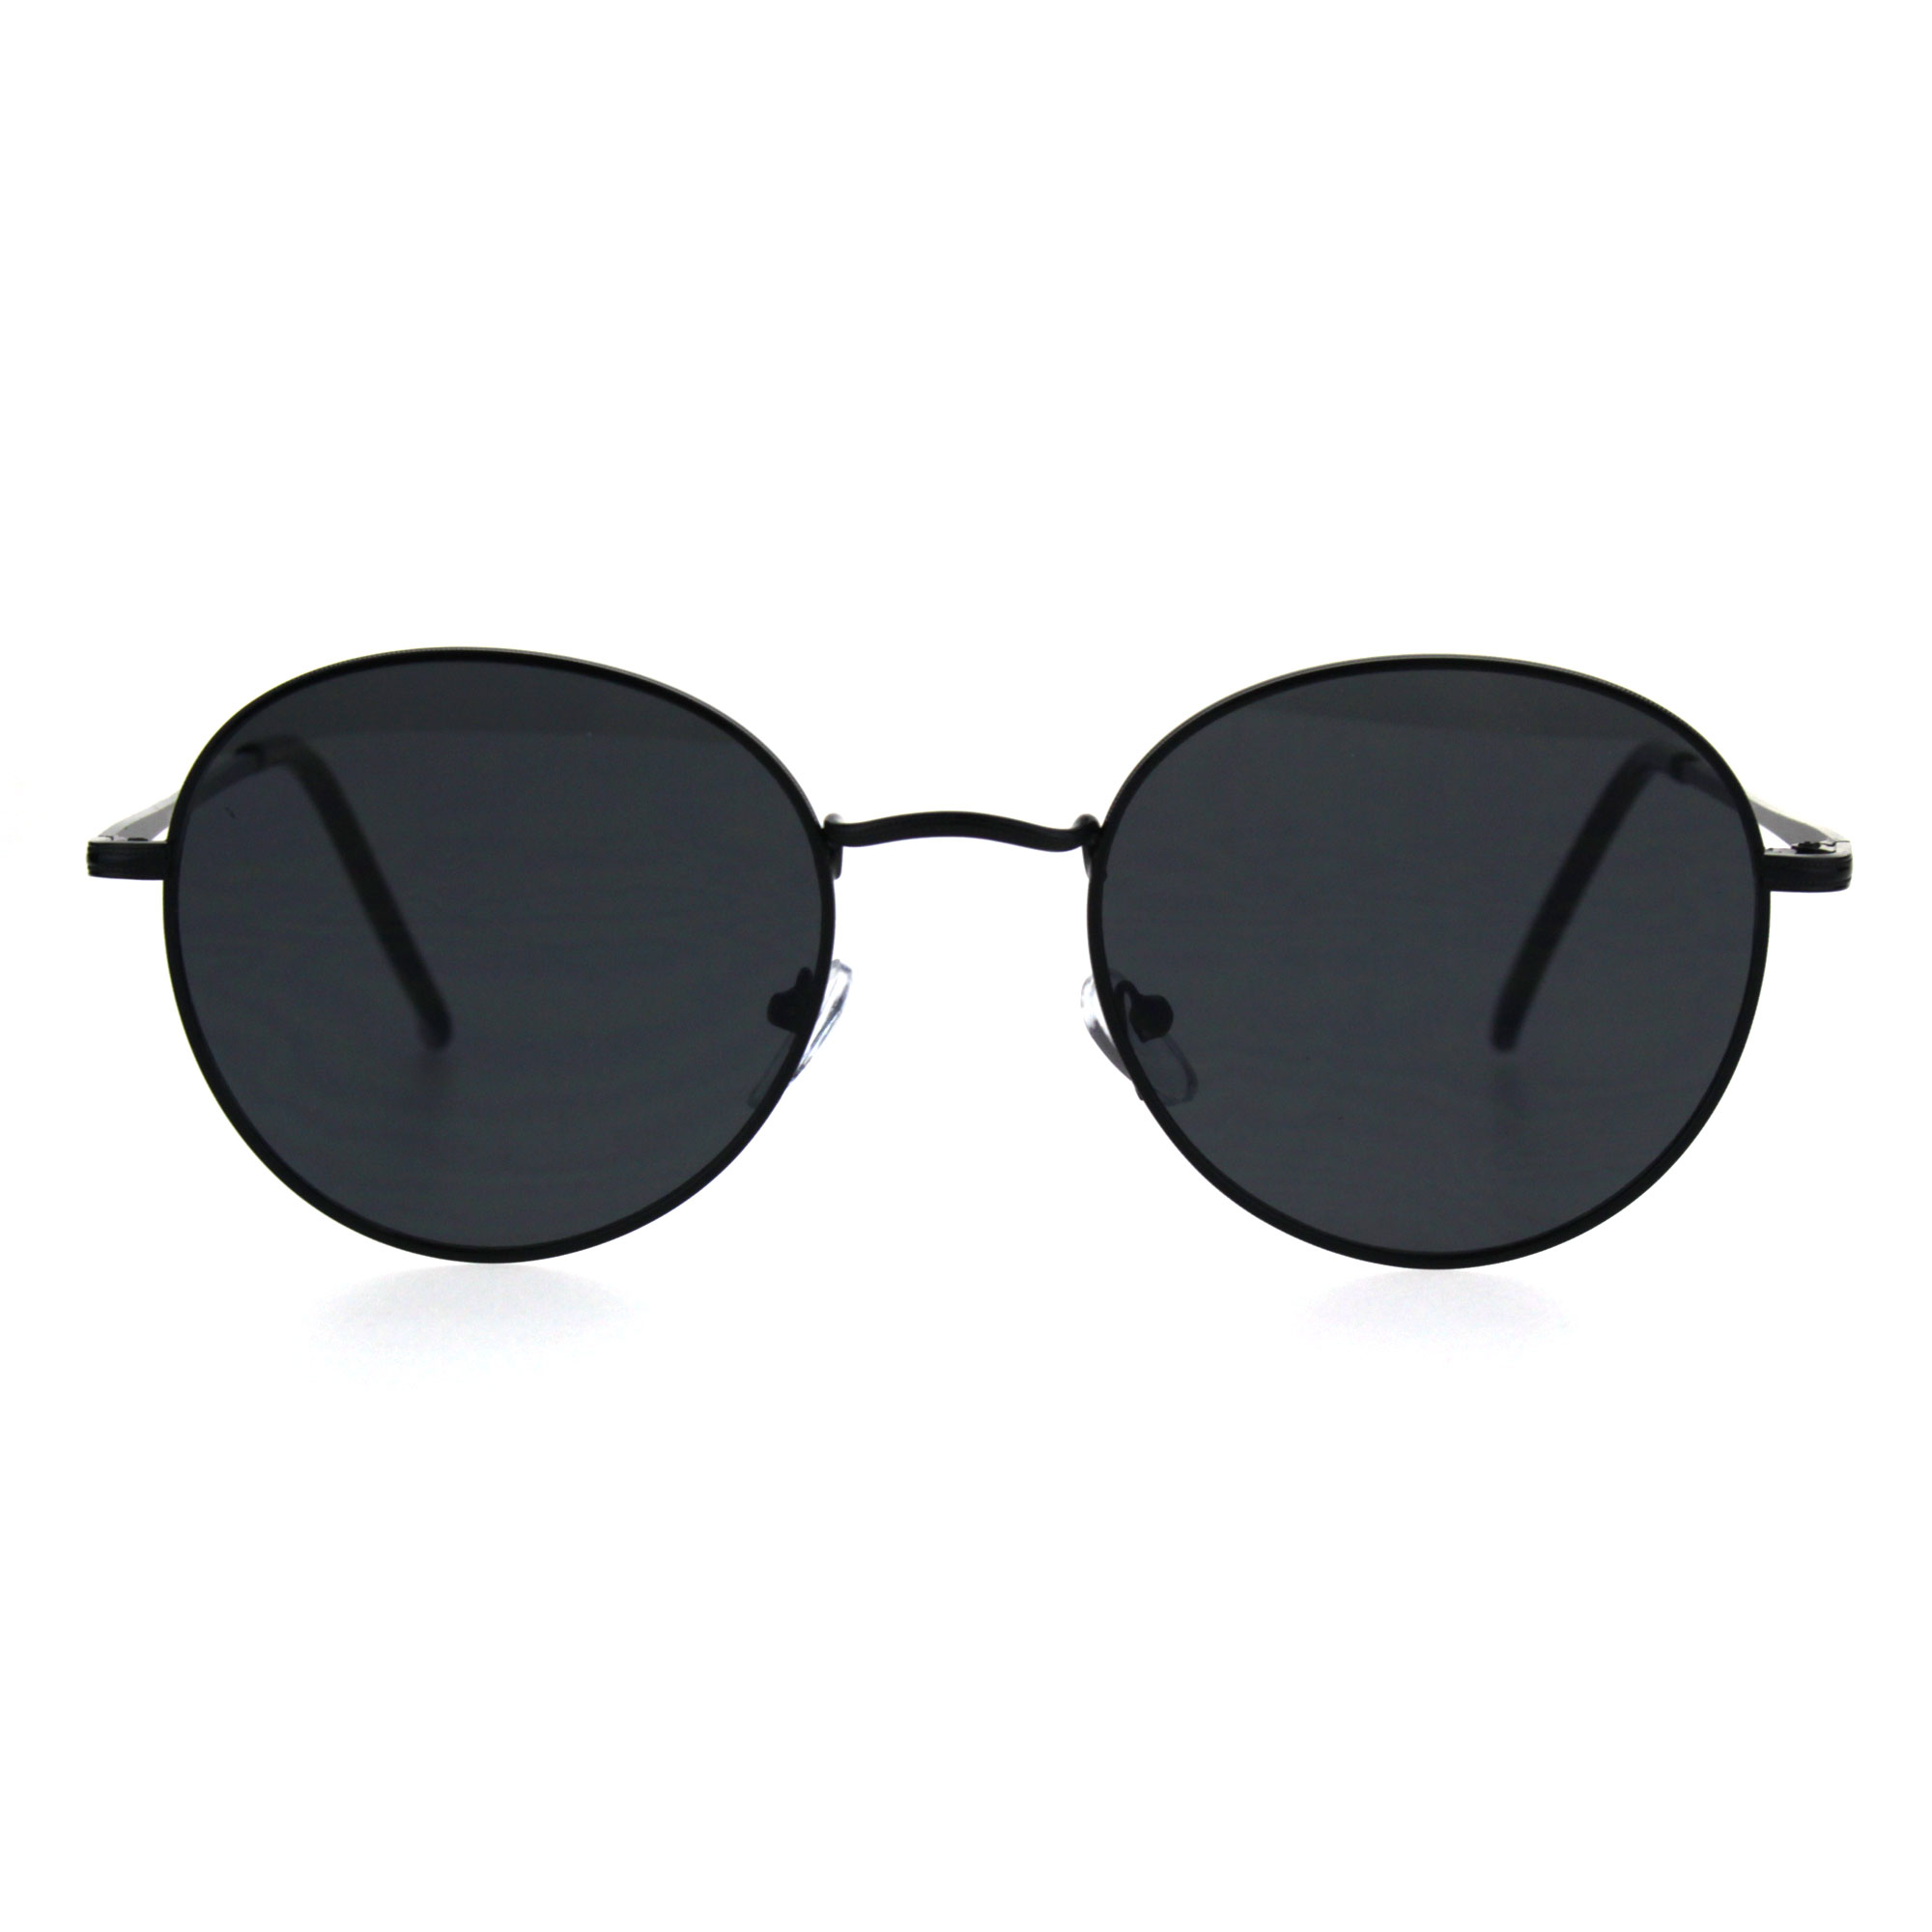 90s Round Retro Metal Rim Classic Sunglasses | eBay